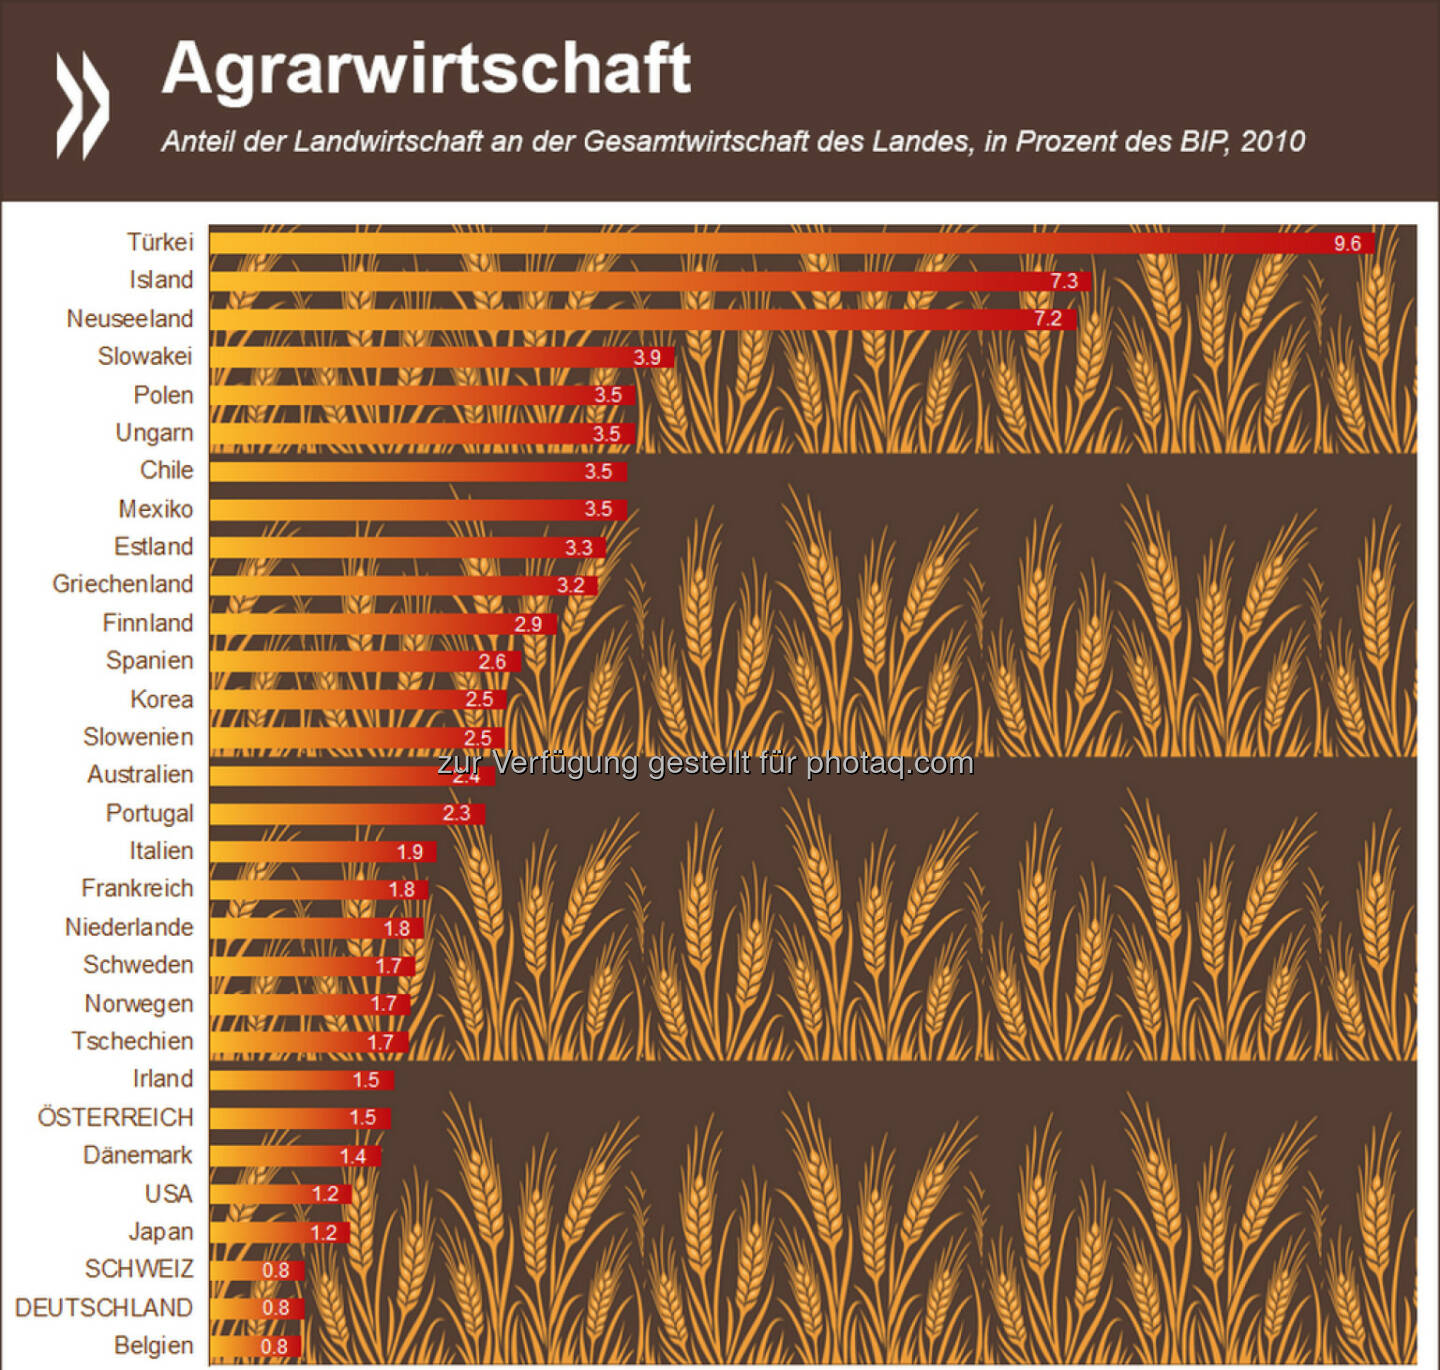 Festtagsessen aus der Region? Der Anteil der Landwirtschaft an der Gesamtwirtschaft ist in Deutschland und der Schweiz so gering wie kaum irgendwo sonst in der OECD. Weniger als ein Prozent des Bruttoinlandsproduktes entfallen auf den Agrarbereich (OECD-Schnitt: 2,6%).
Mehr Infos zum Thema: http://bit.ly/13UnkWr (S. 27 f.)